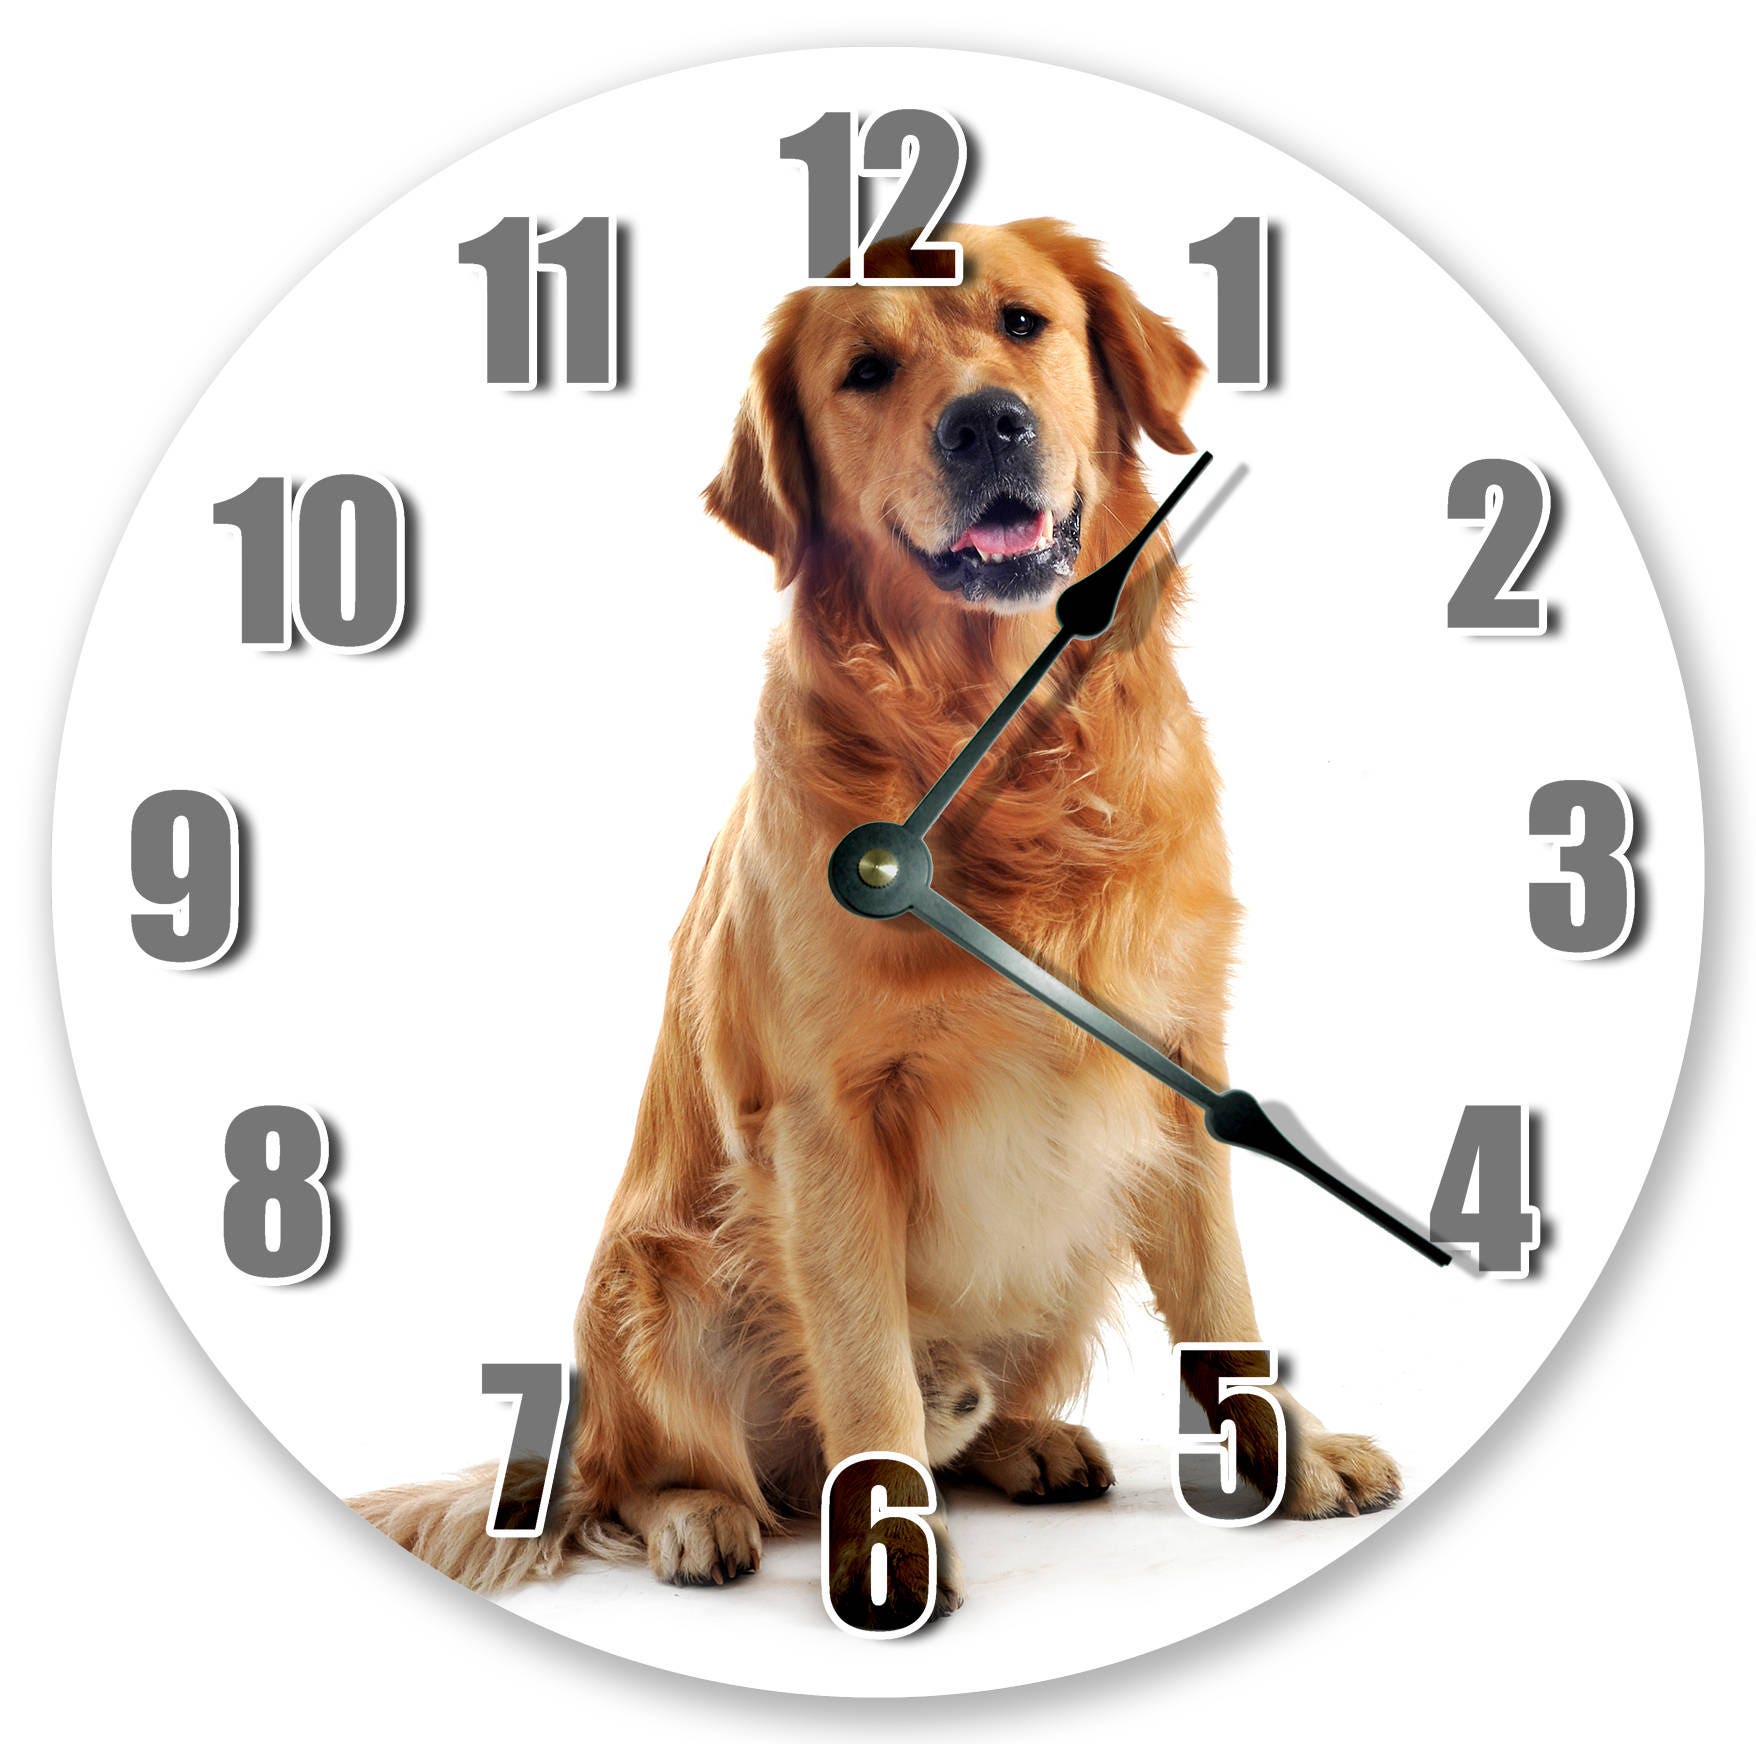 Часы про животных. Часы животные. Собака и часы. Фото часы с животными. Сибирская часы собаки.